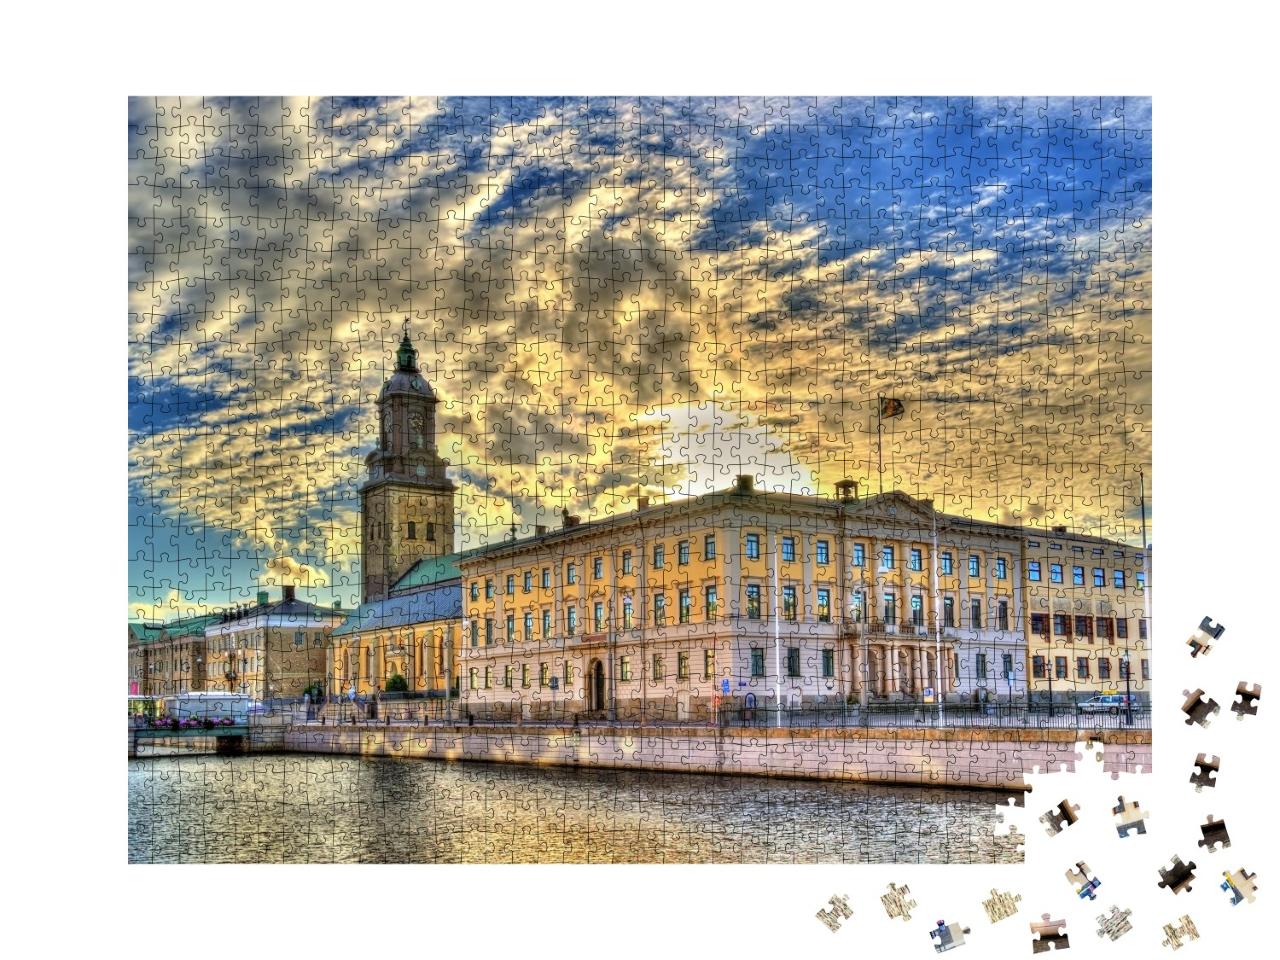 Puzzle de 1000 pièces « L'hôtel de ville et l'église allemande de Göteborg, Suède »